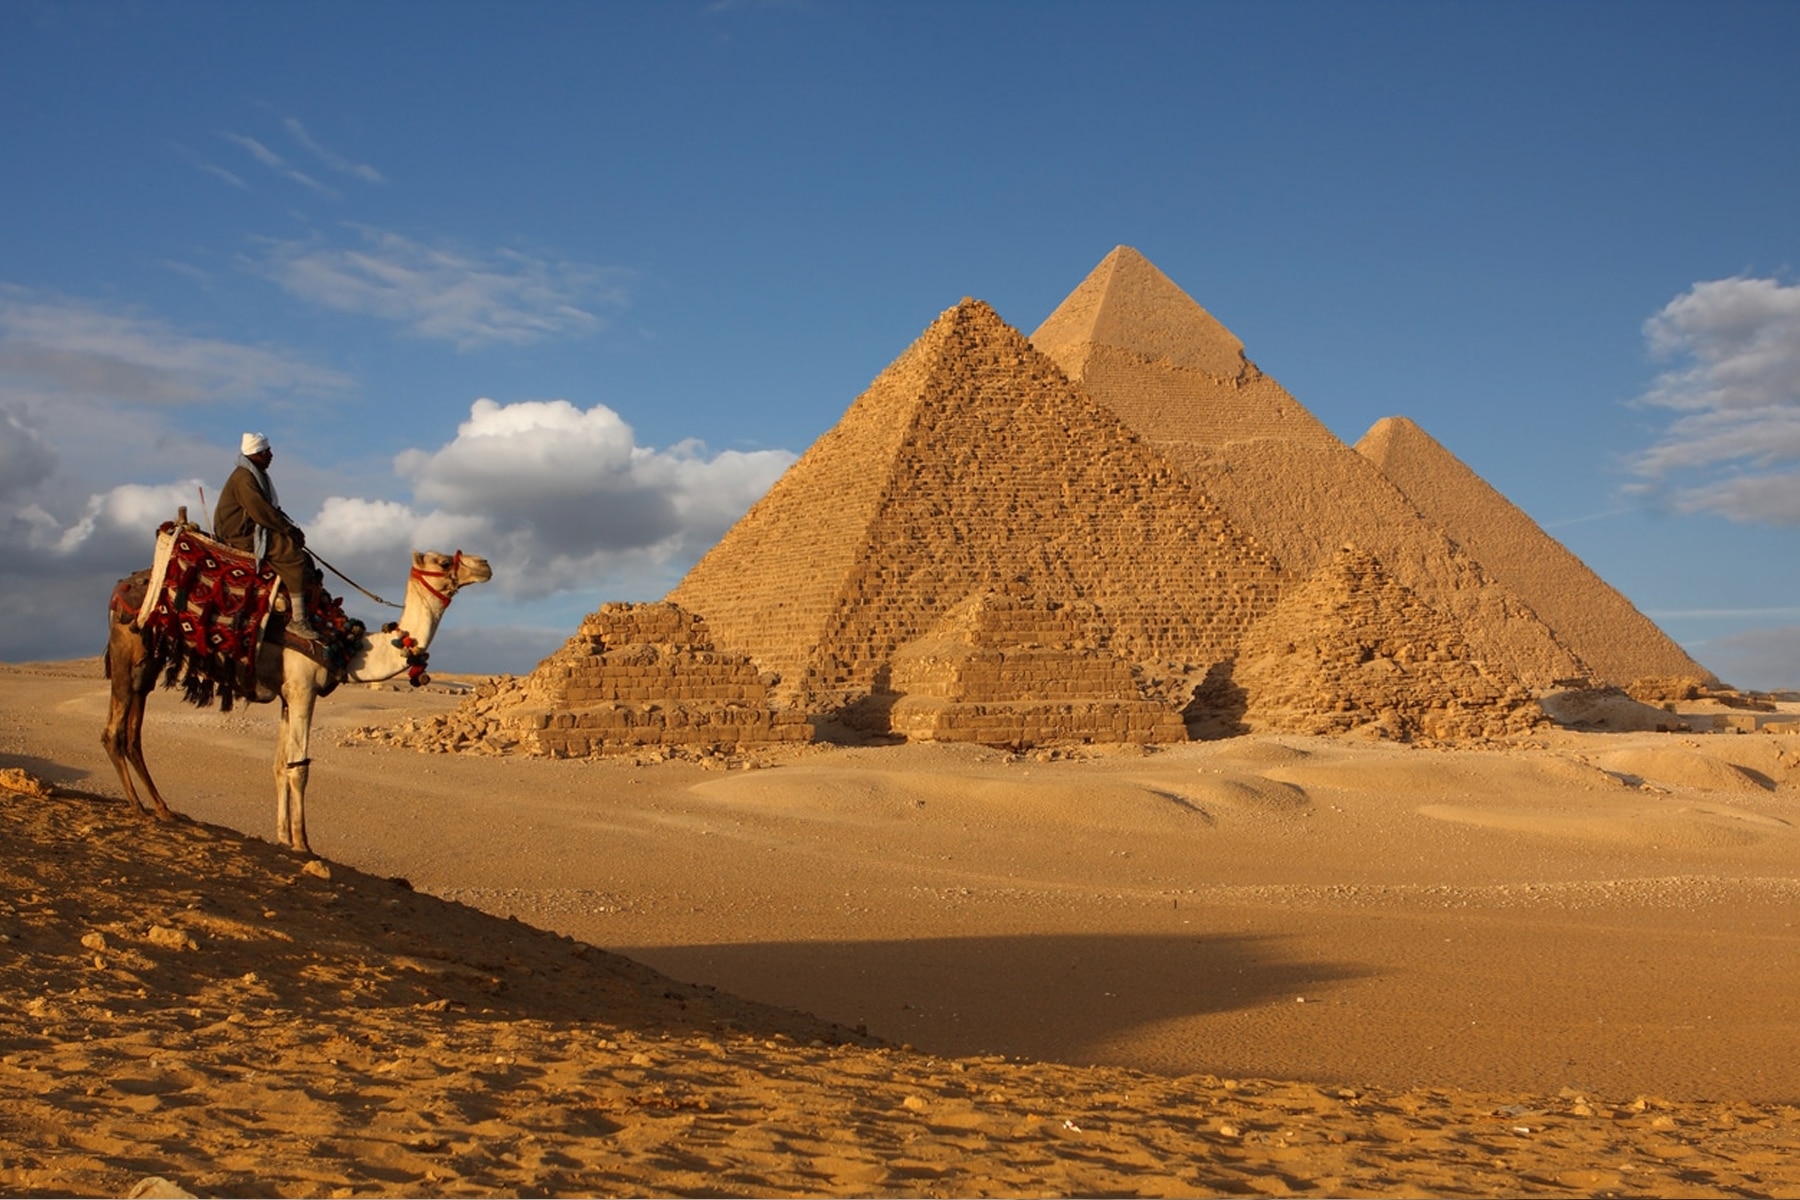 دق زاهي حواس، وزير الدولة الأسبق للآثار في مصر وعالم الآثار الشهير، ناقوس الخطر بشأن الآثار واحتمال اختفائها